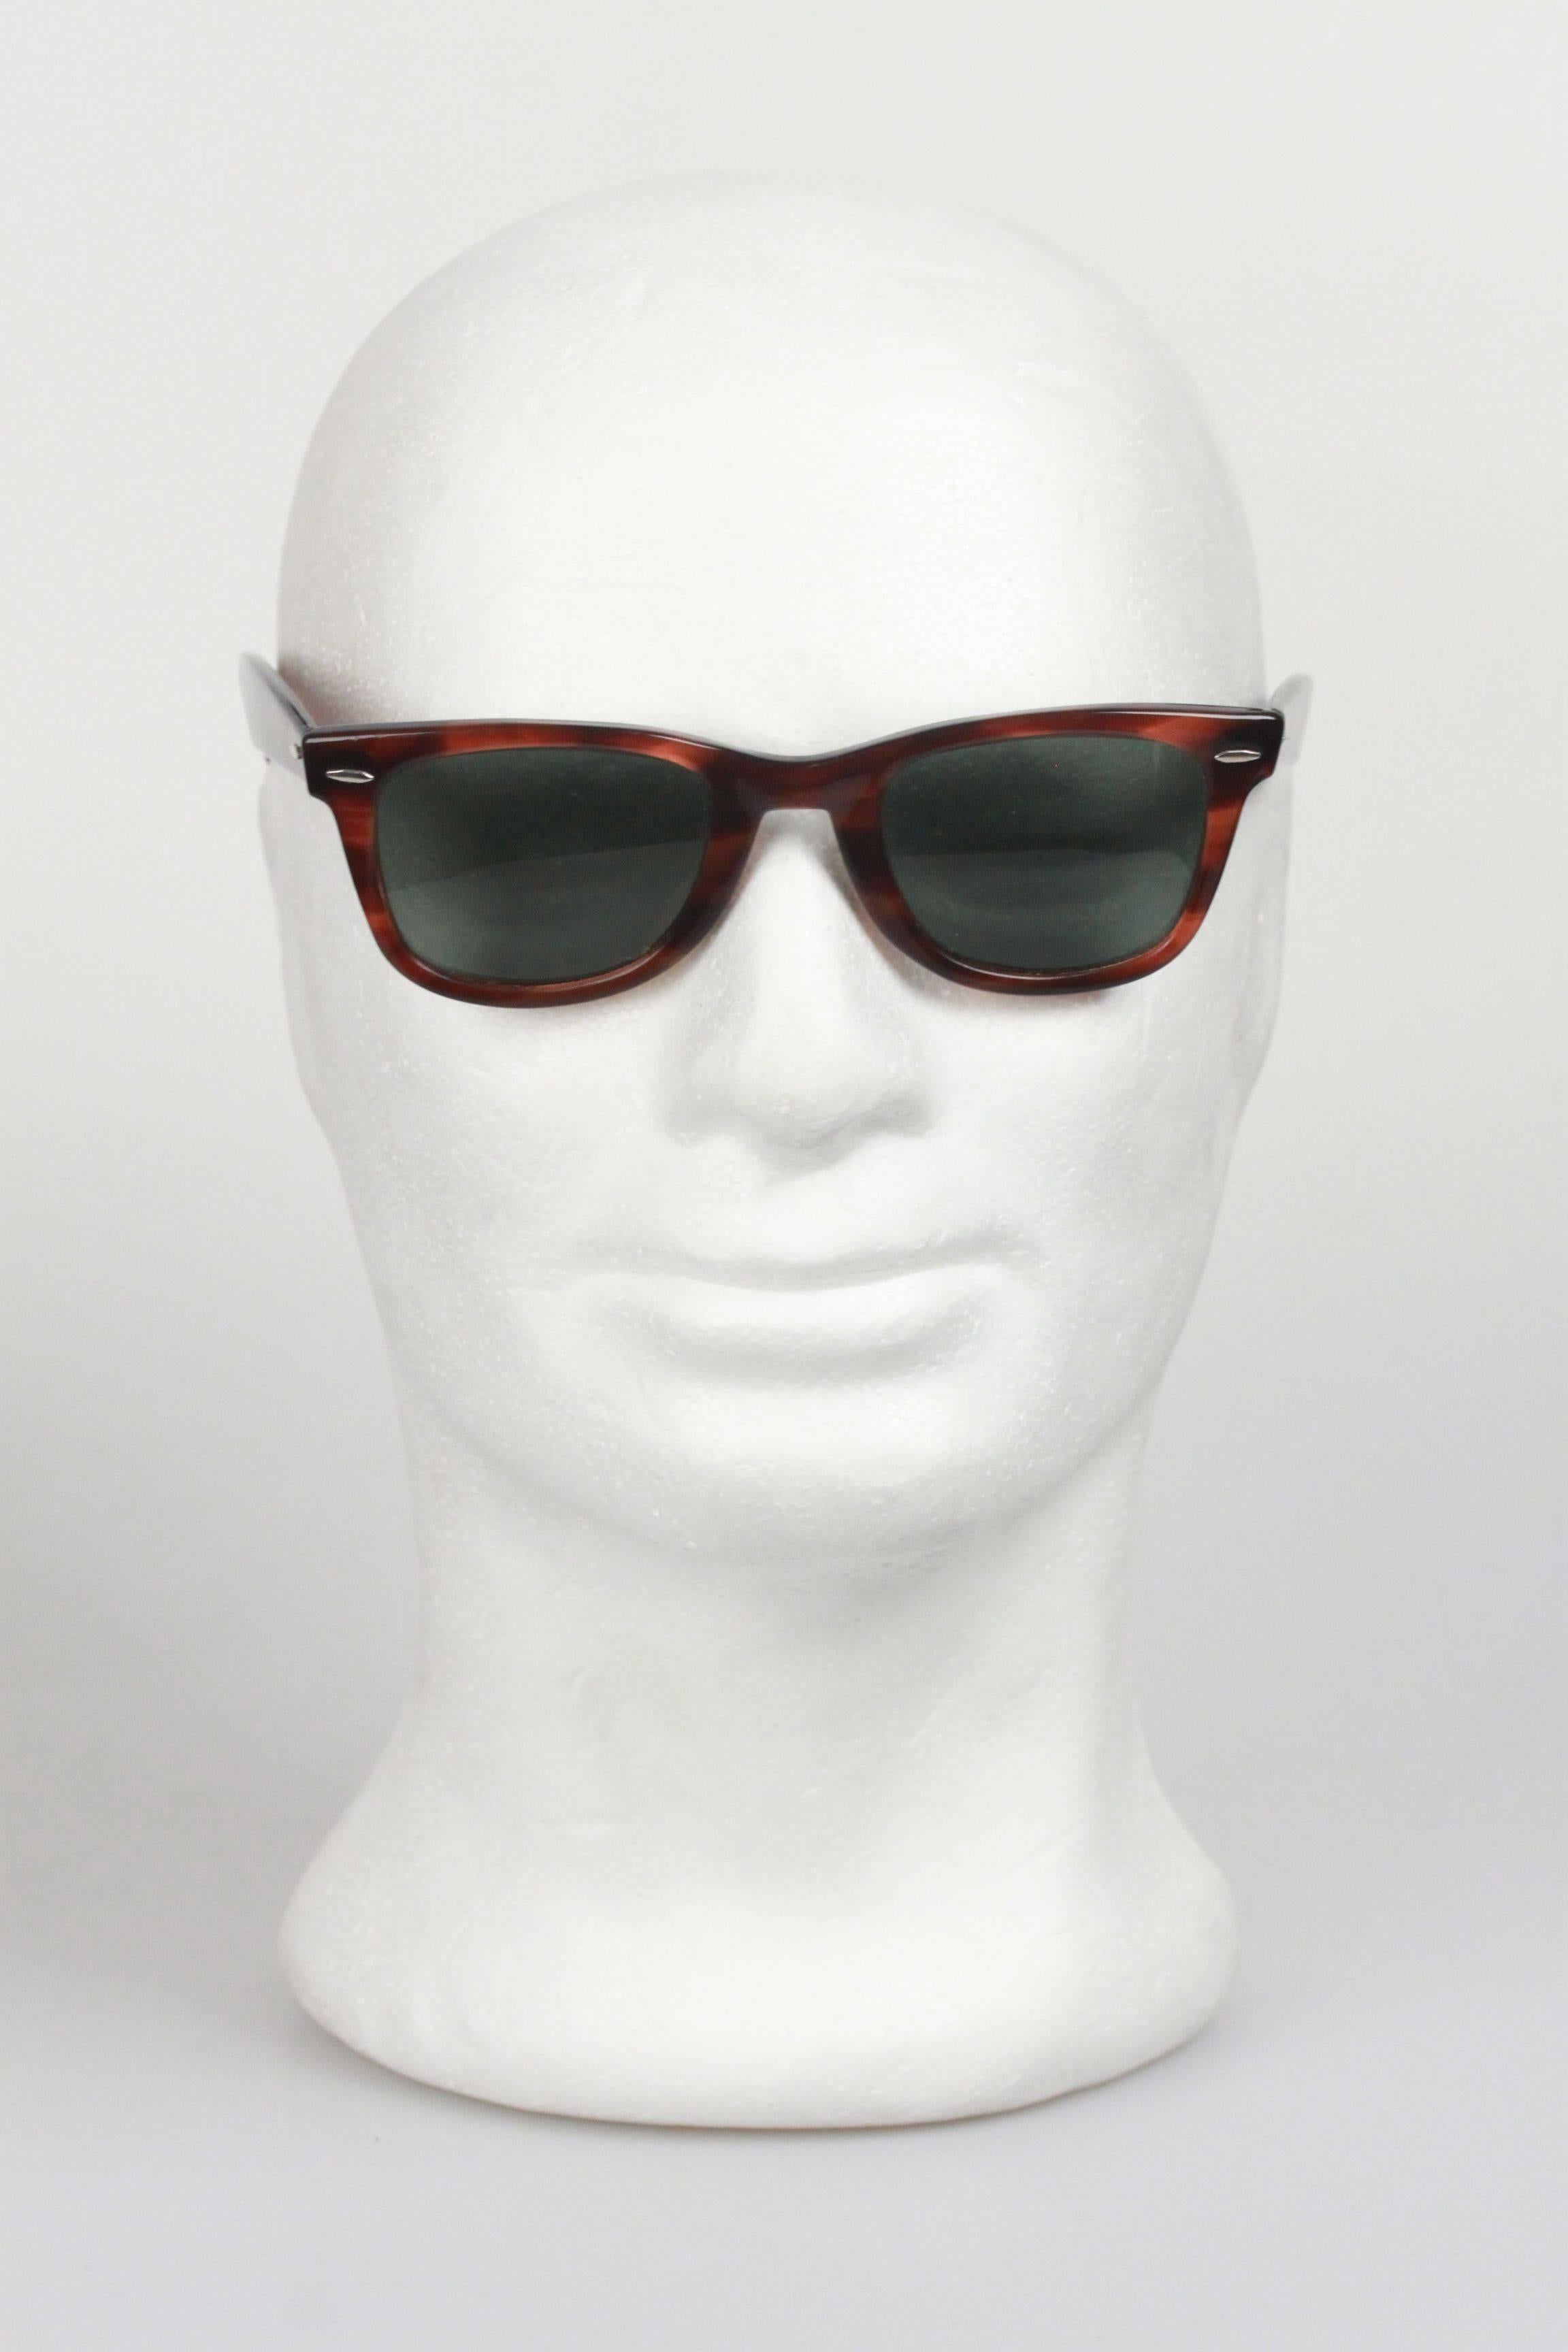 Ray Ban B&L 5024 Vintage Wayfarer Brown Sunglasses  1